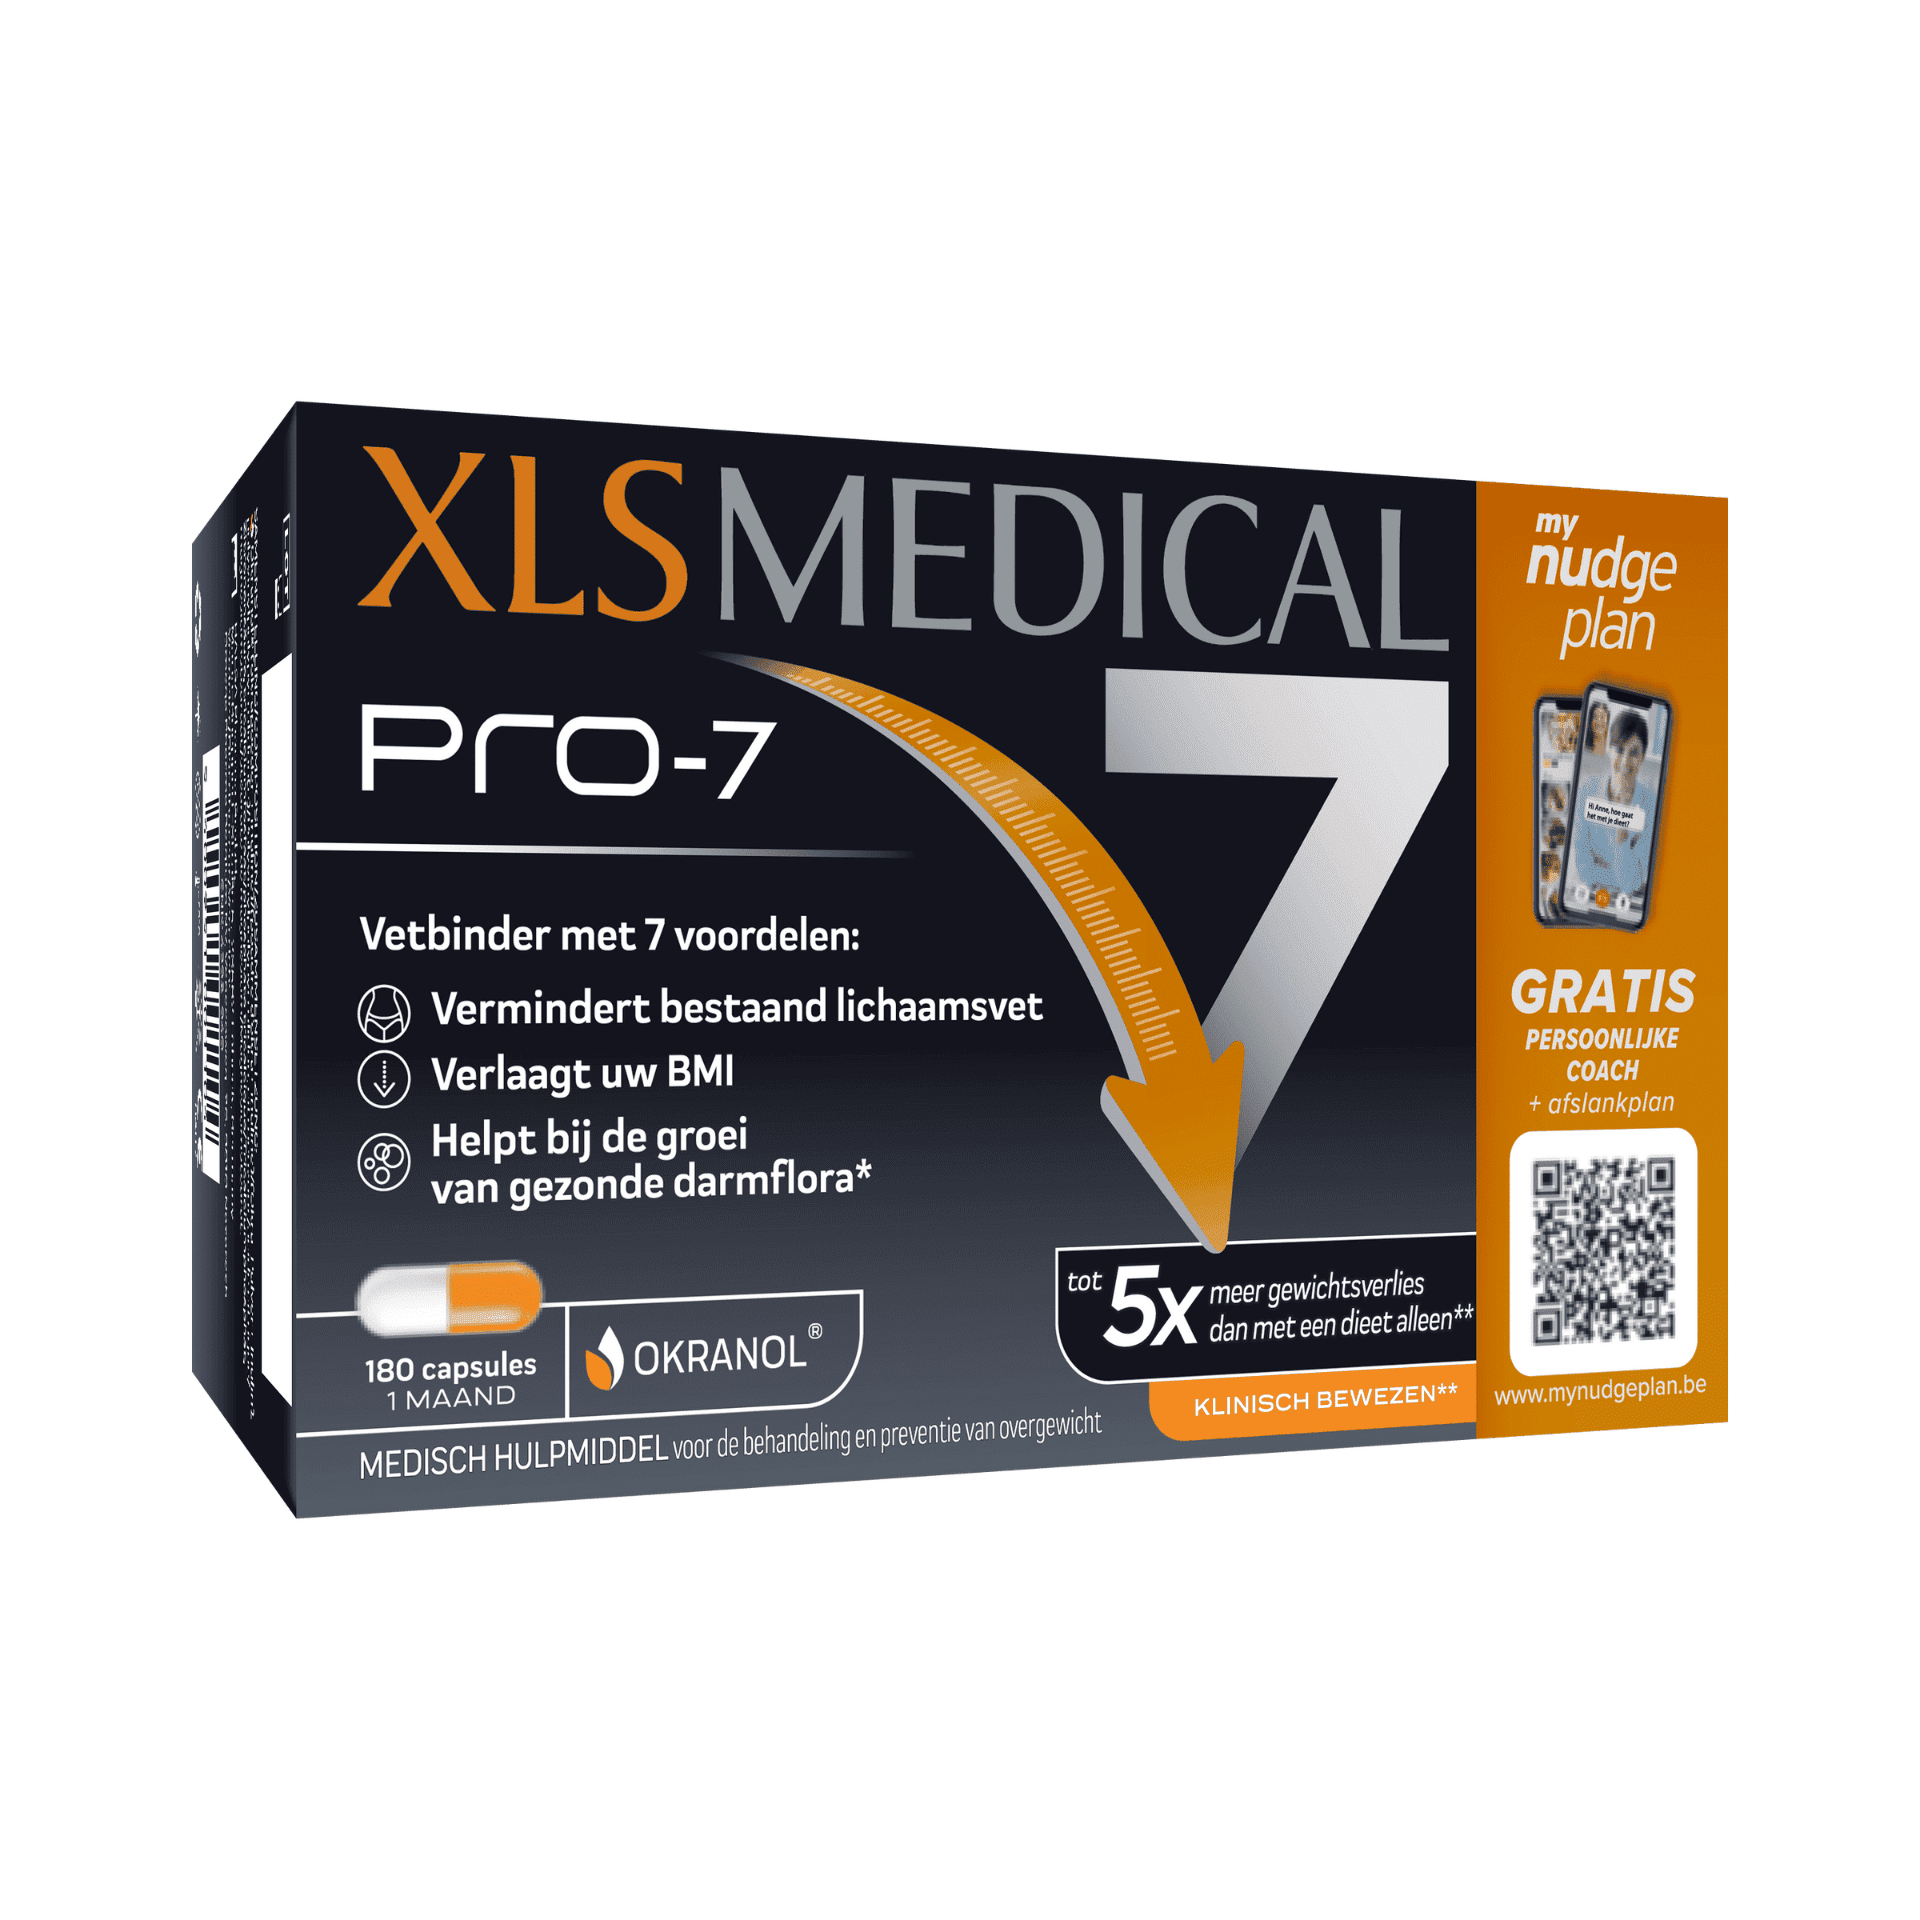 XLS Medical Pro-7 - GRATIS PERSOONLIJKE COACH + Afslankplan